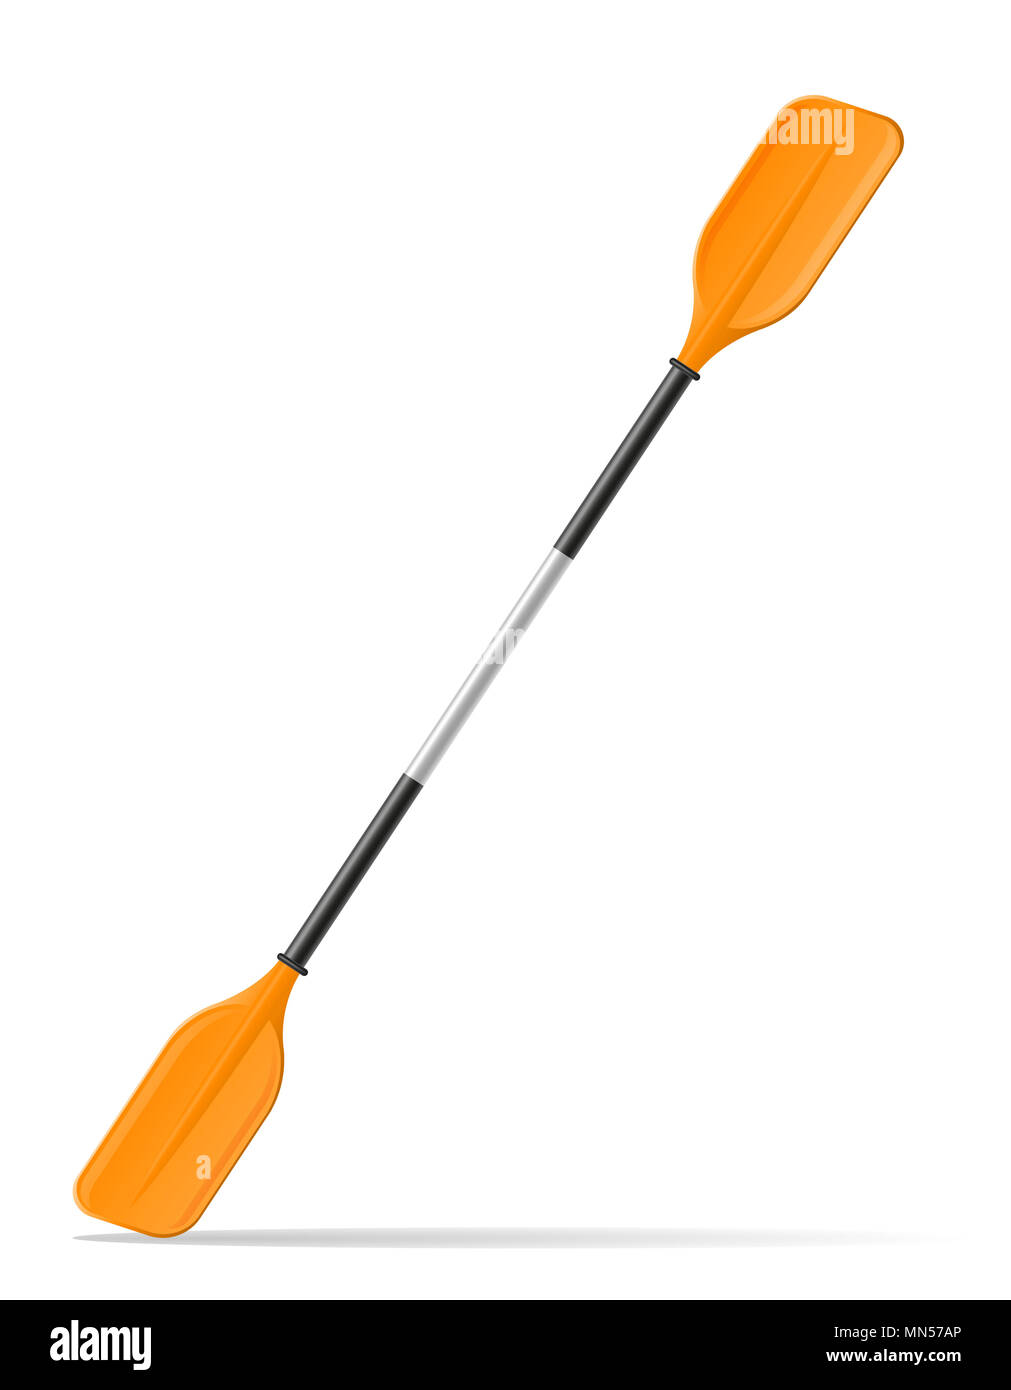 Pala de kayak o canoa ilustración vectorial aislado sobre fondo blanco. Foto de stock